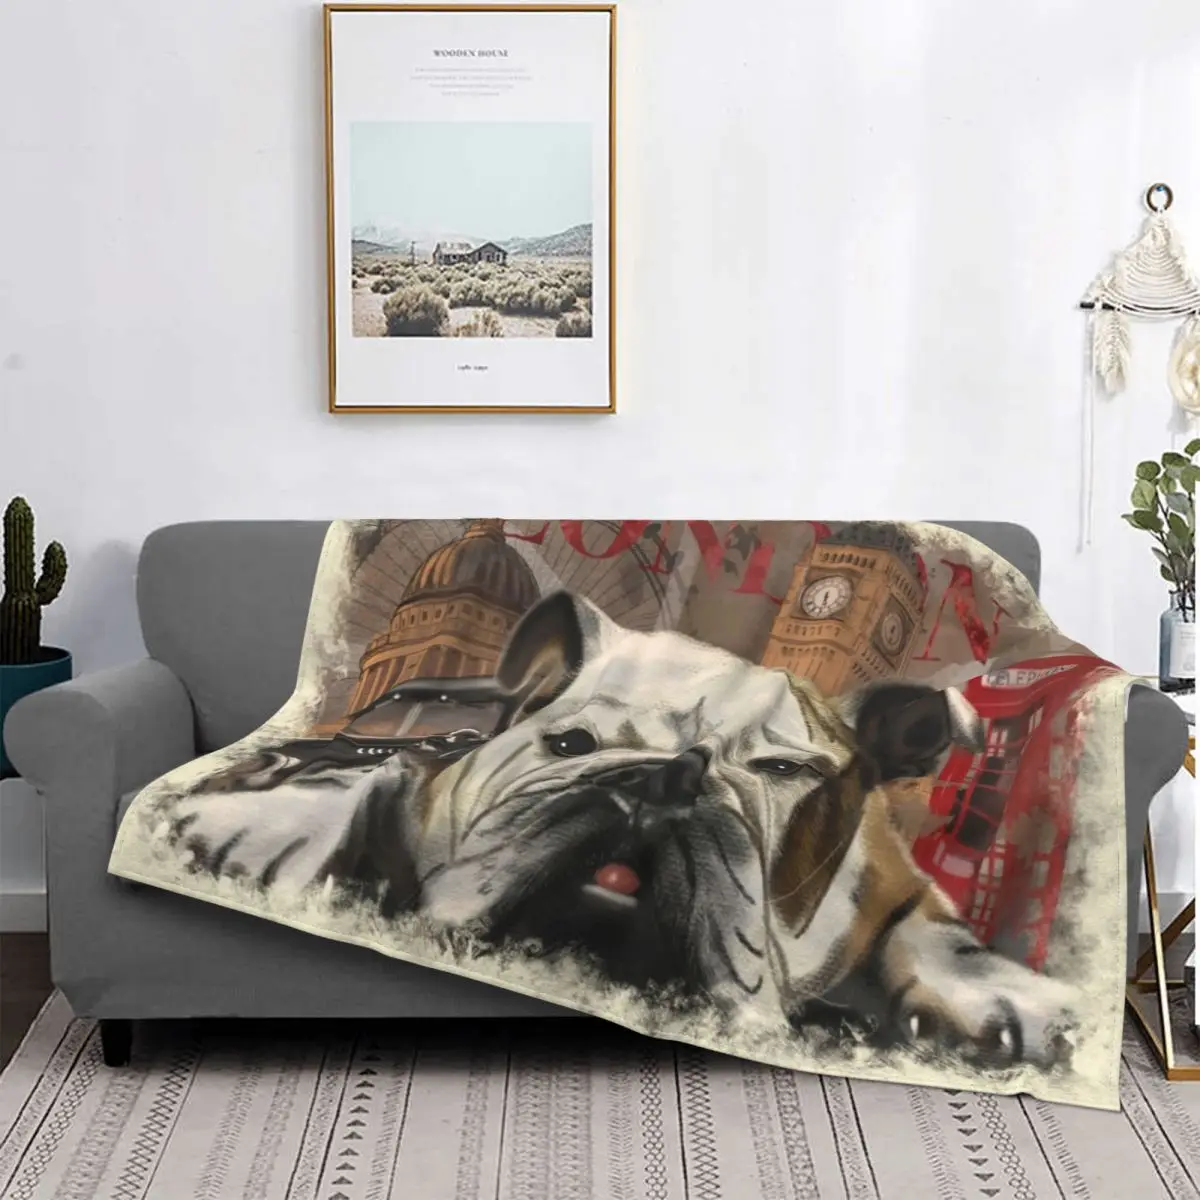 

Бархатное одеяло с изображением бульдога из Лондона, зимнее многофункциональное легкое покрывало с изображением животных для кровати, див...